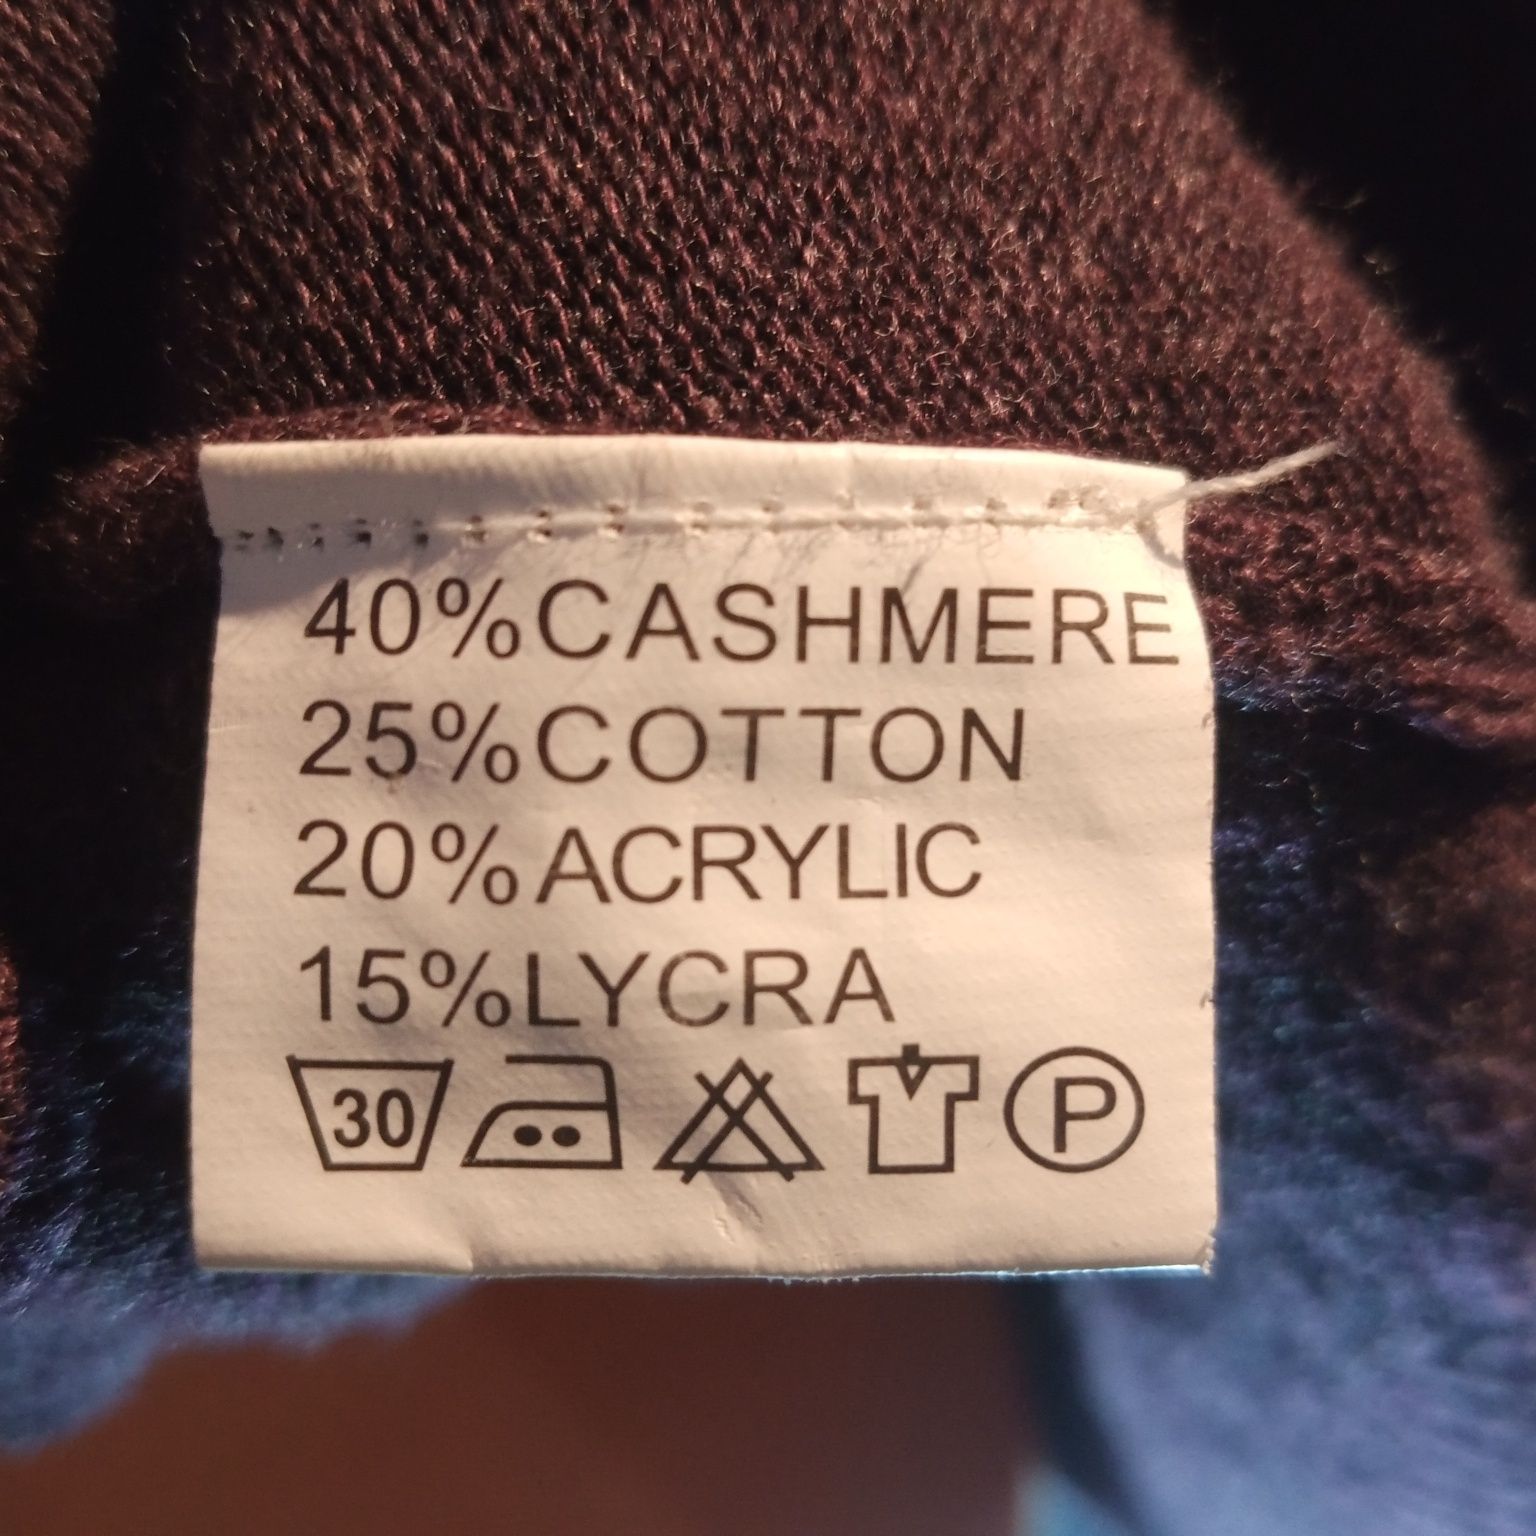 Fioletowy, śliwkowy sweter damski rozpinany rozmiar L/XL, kaszmir